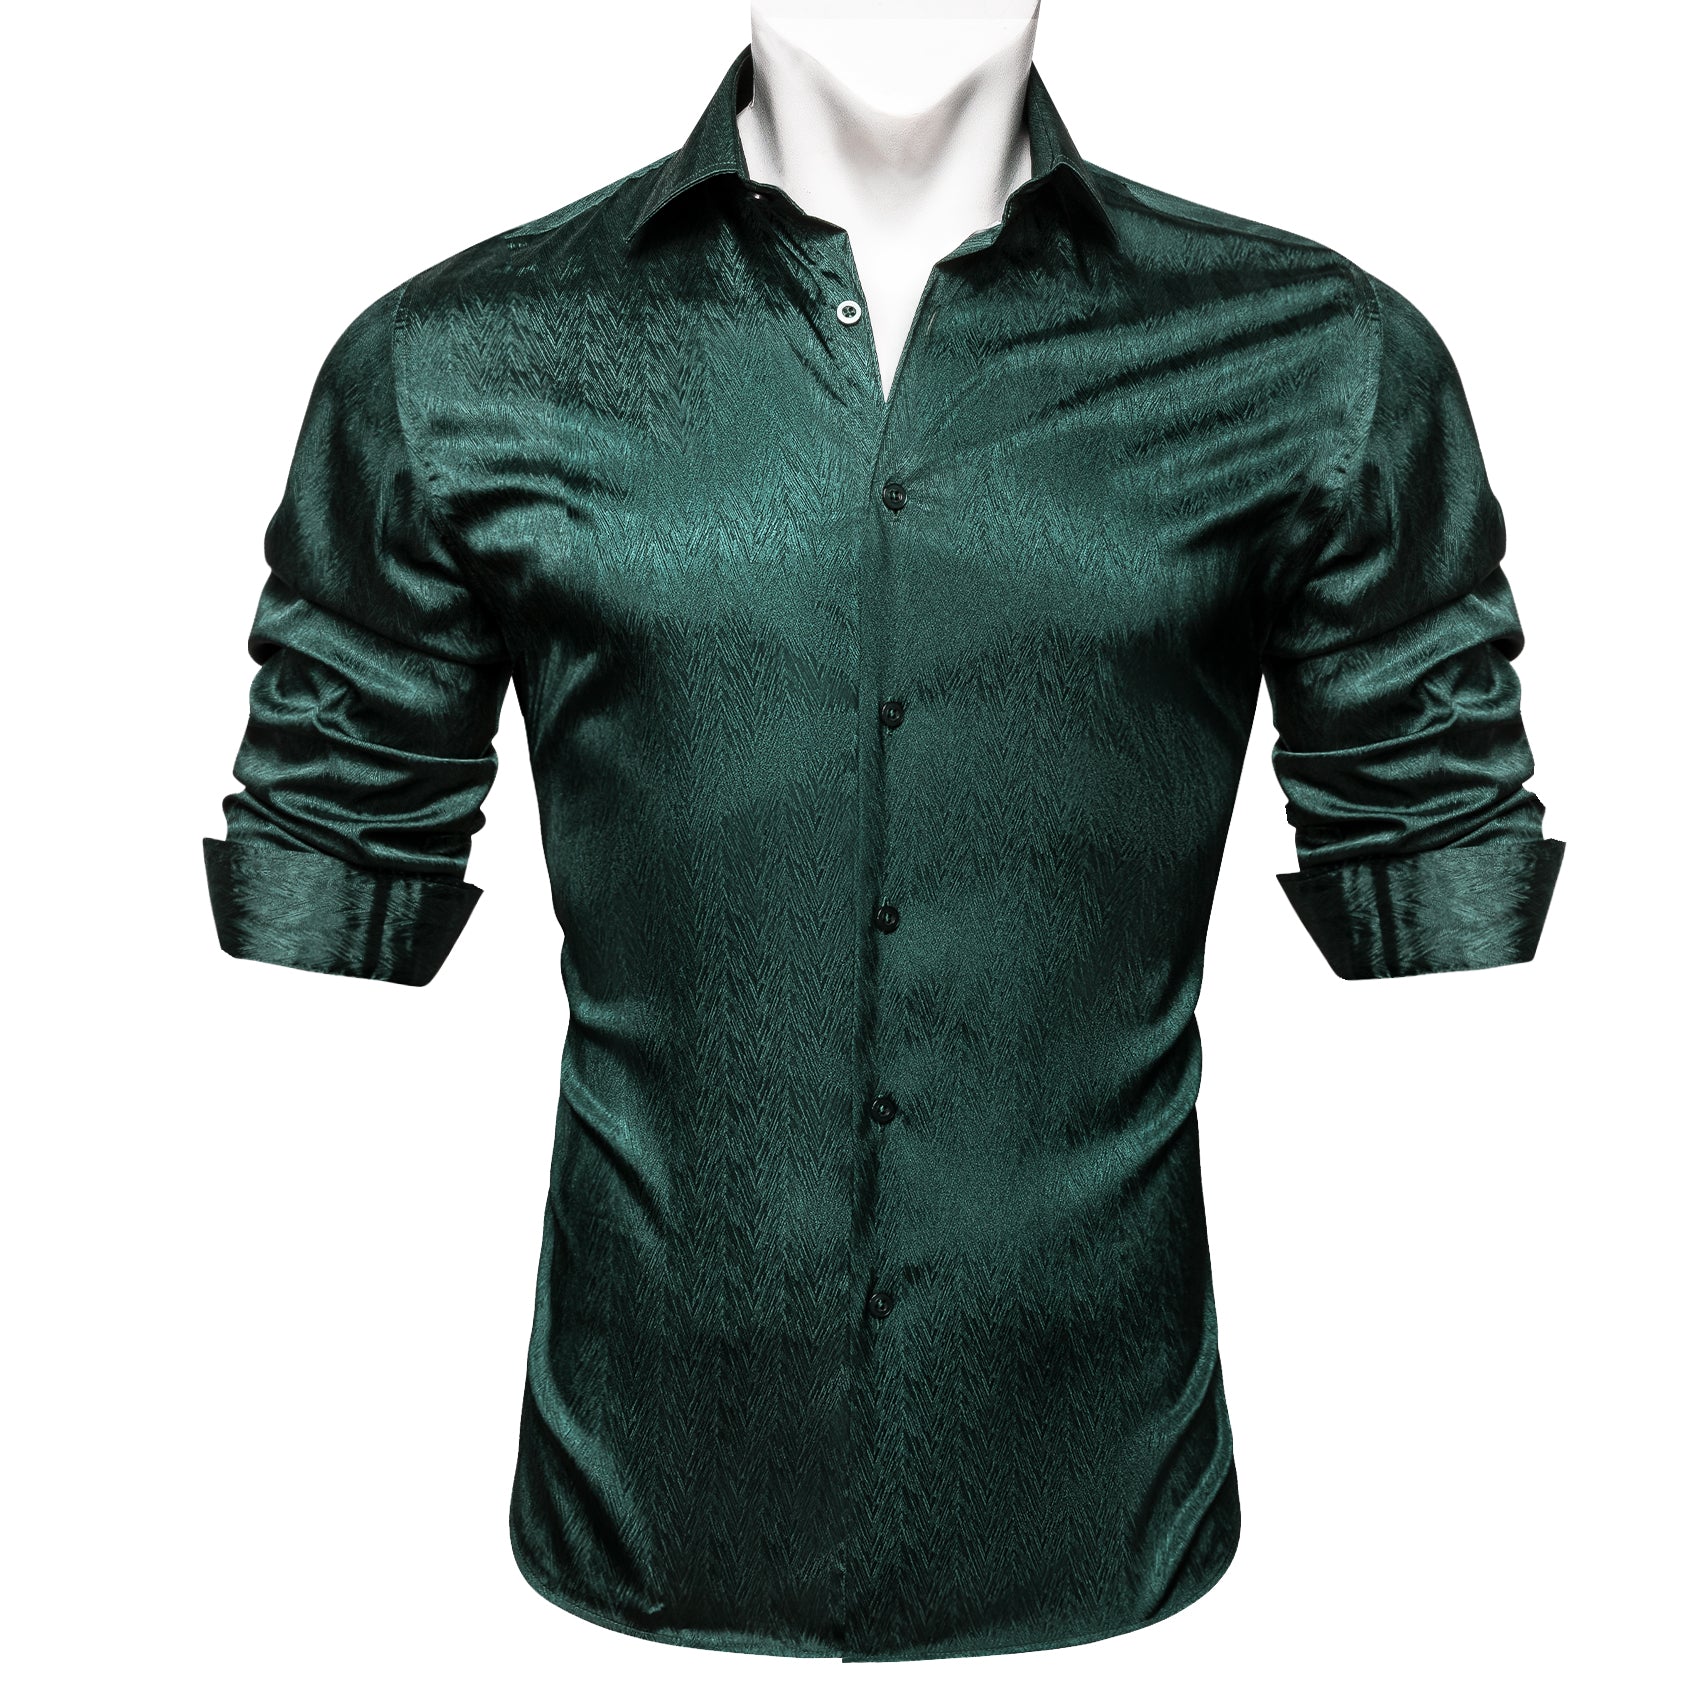 Barry.Wang Button Down Shirt Classy Green Solid Silk Men's Long Sleeve Shirt Business